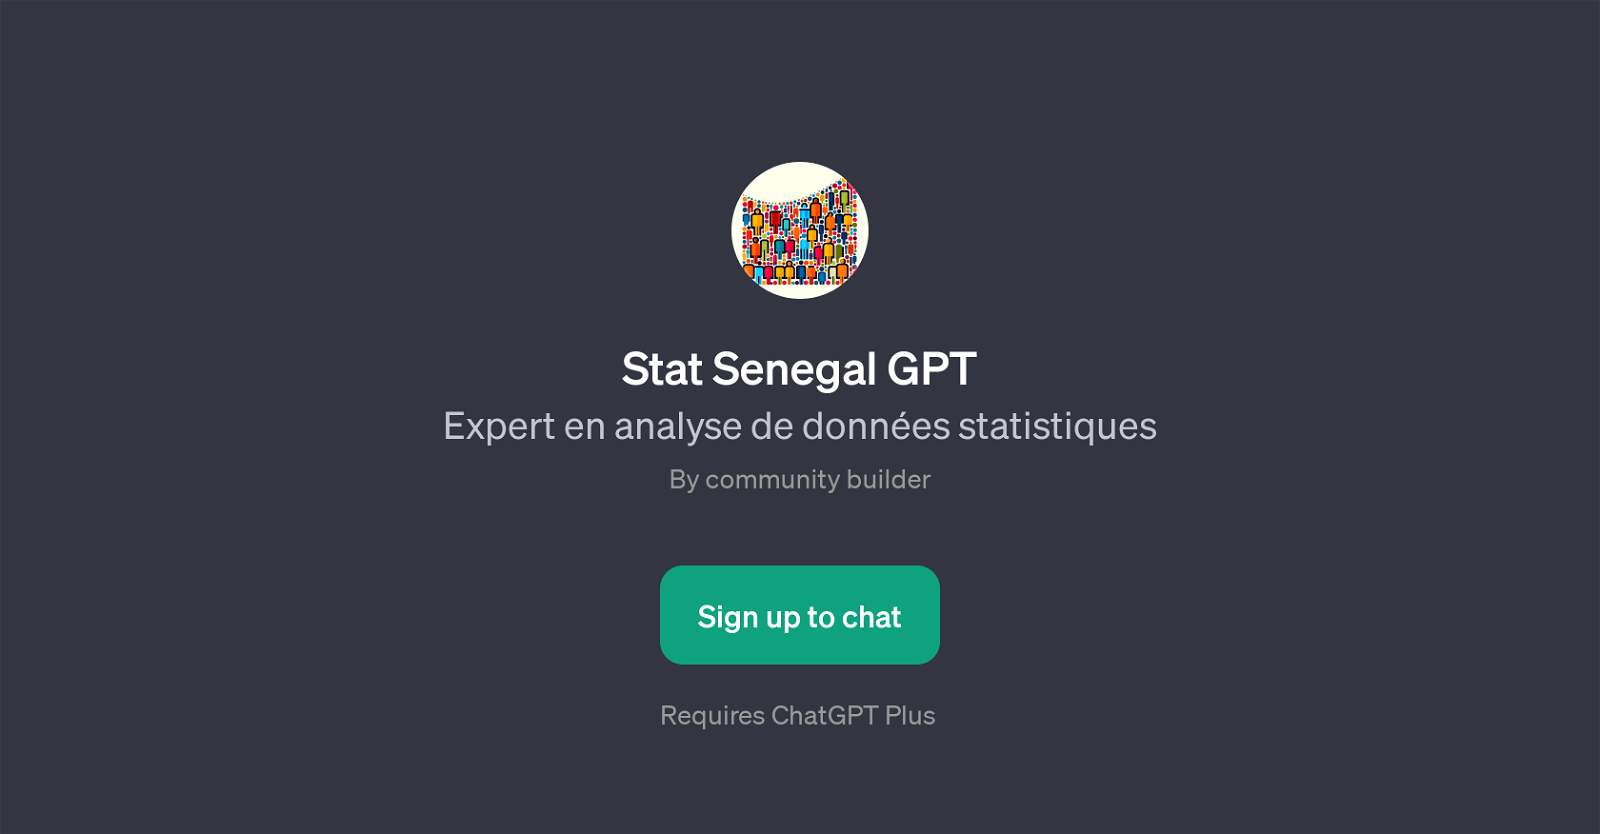 Stat Senegal GPT website